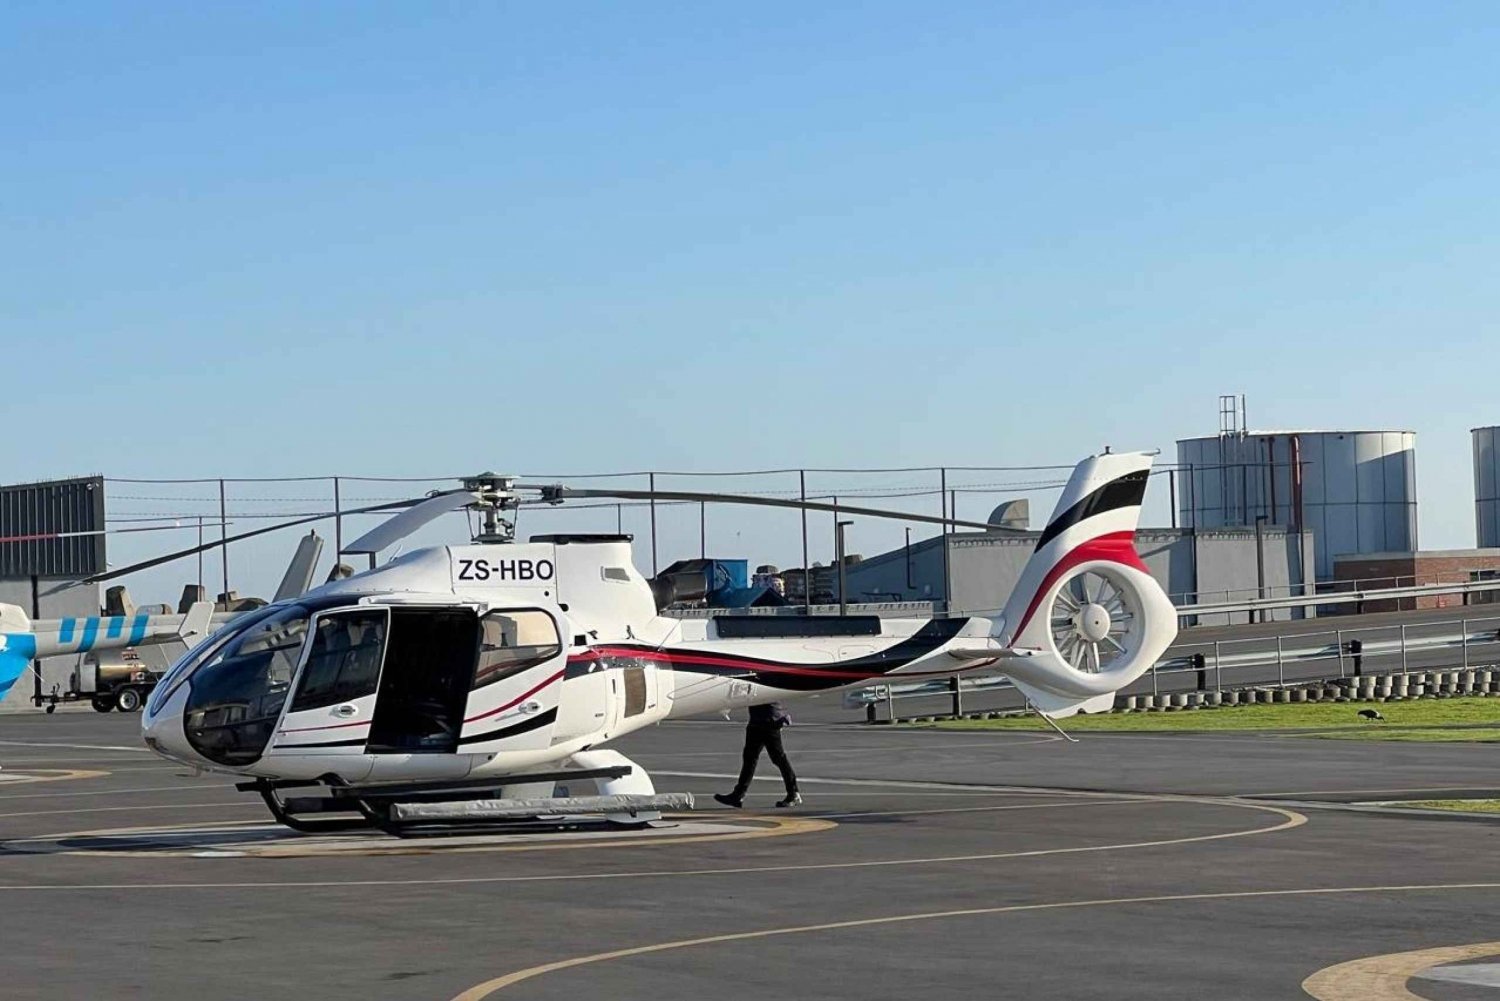 Un tour d'hélicoptère de 20 minutes dans la région viticole de Durbanville